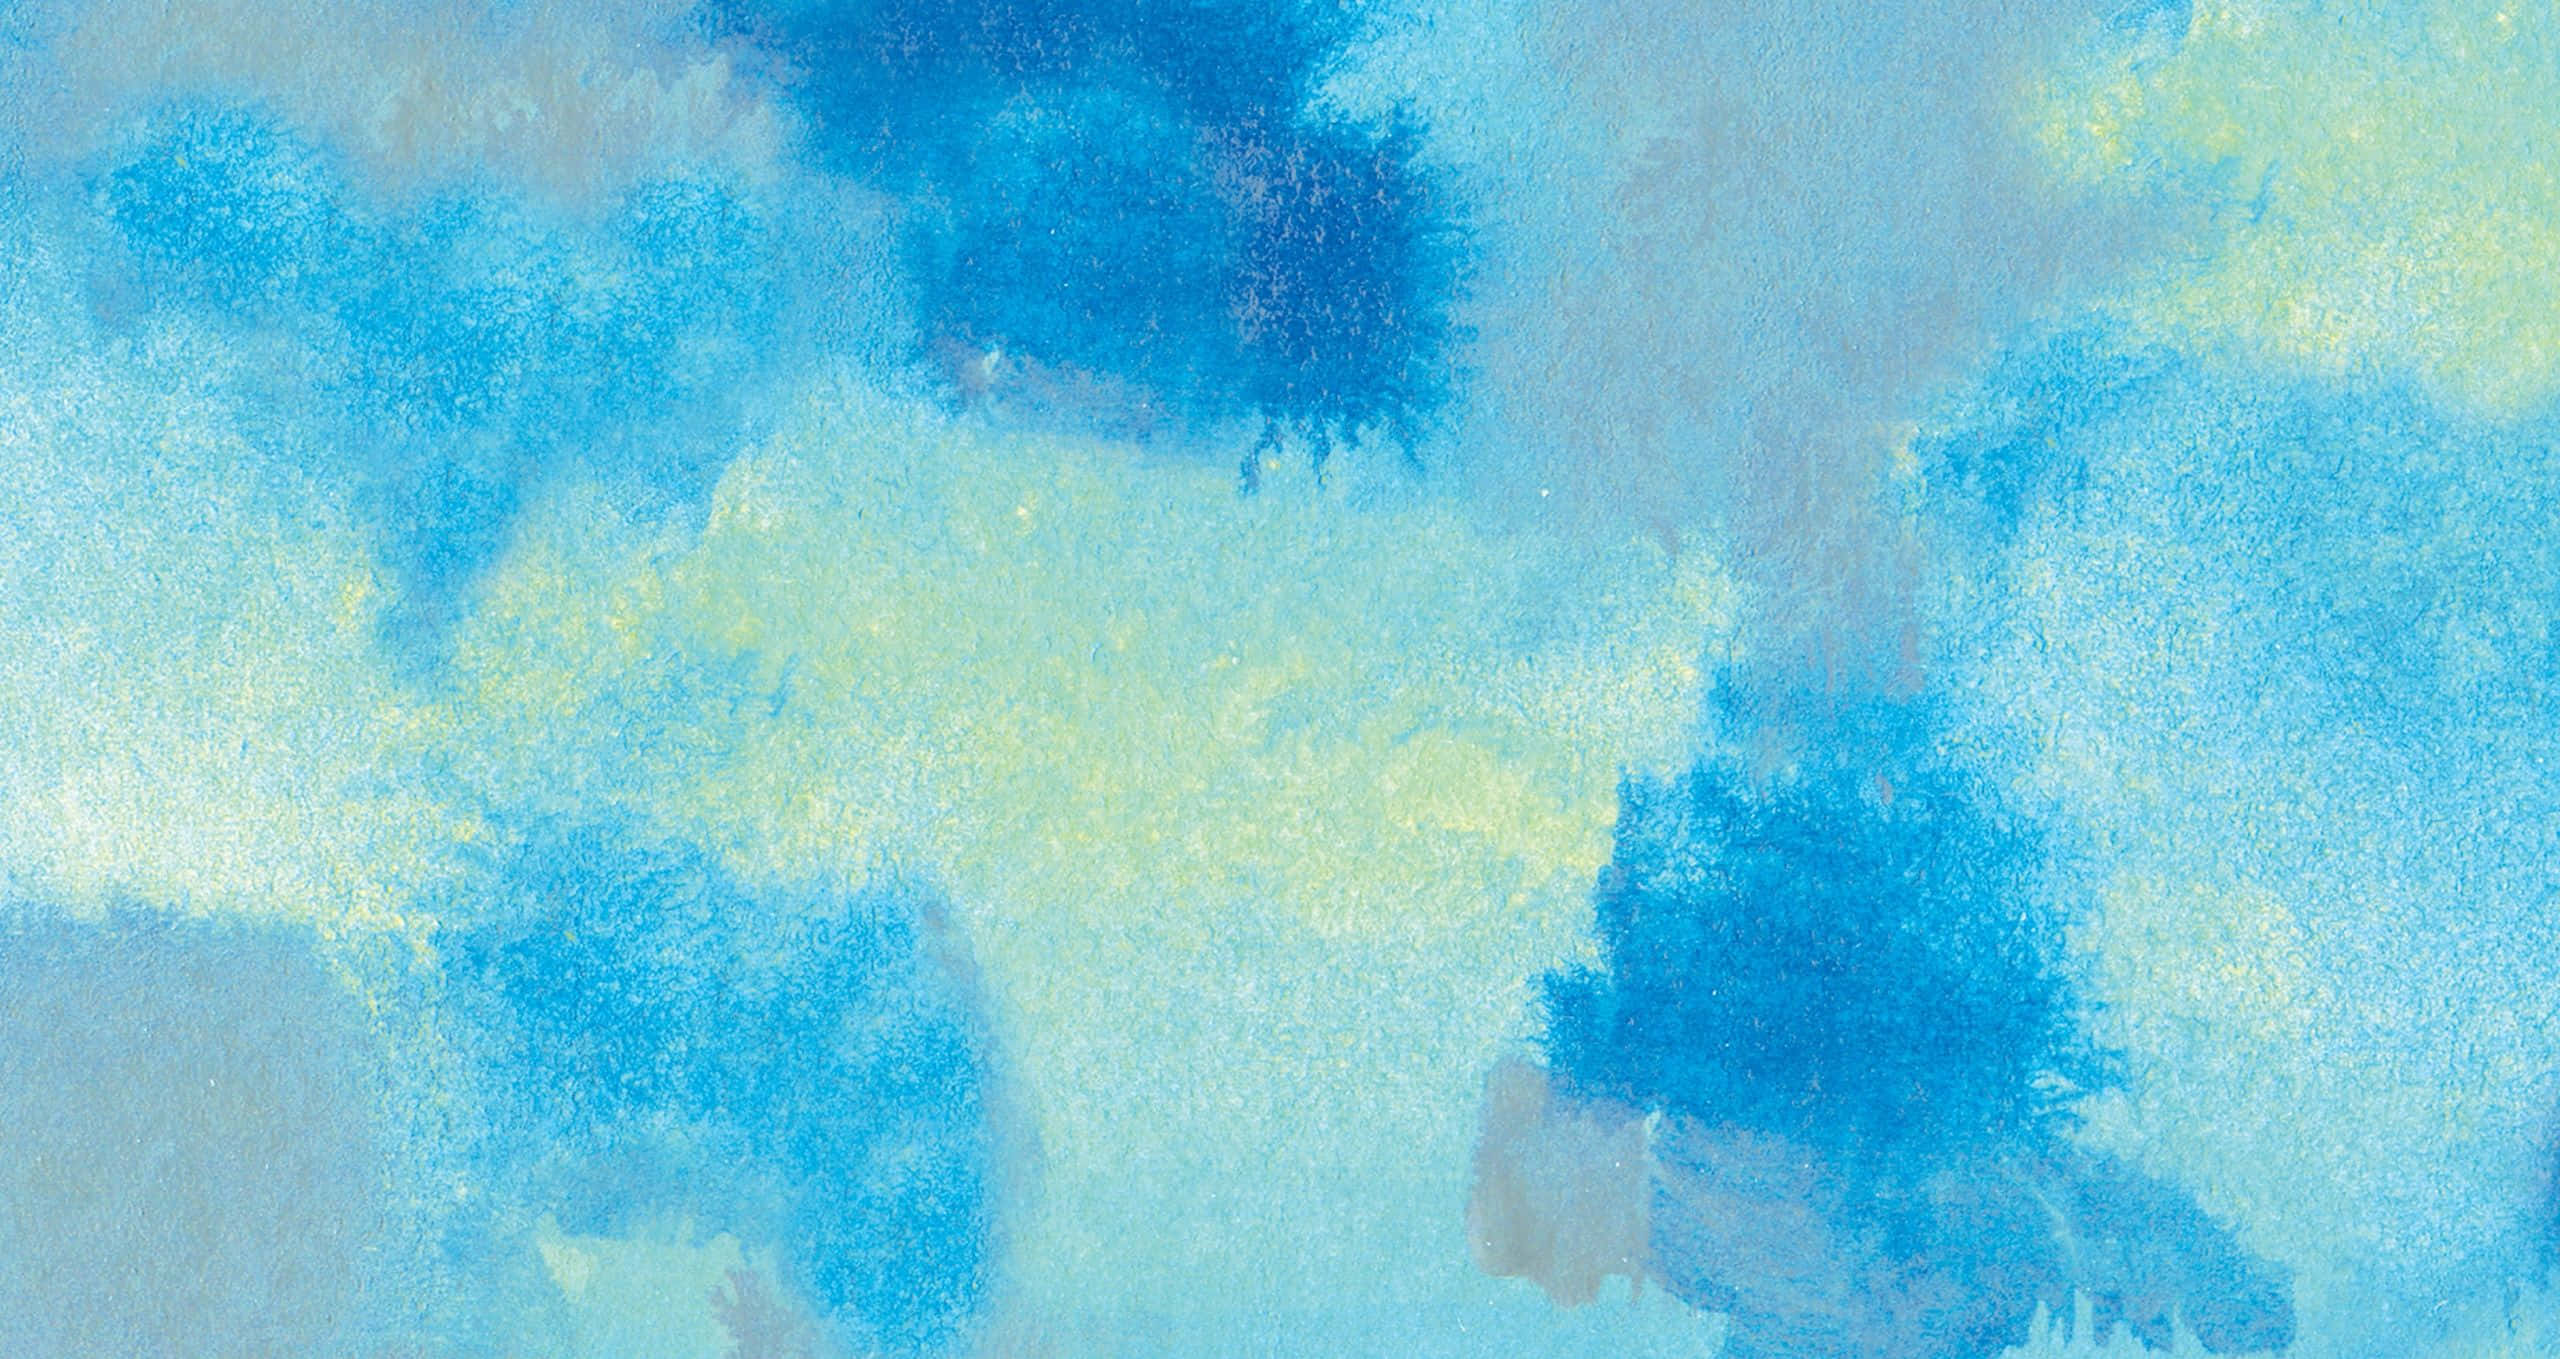 Einabstraktes Gemälde In Blau Und Gelb. Wallpaper